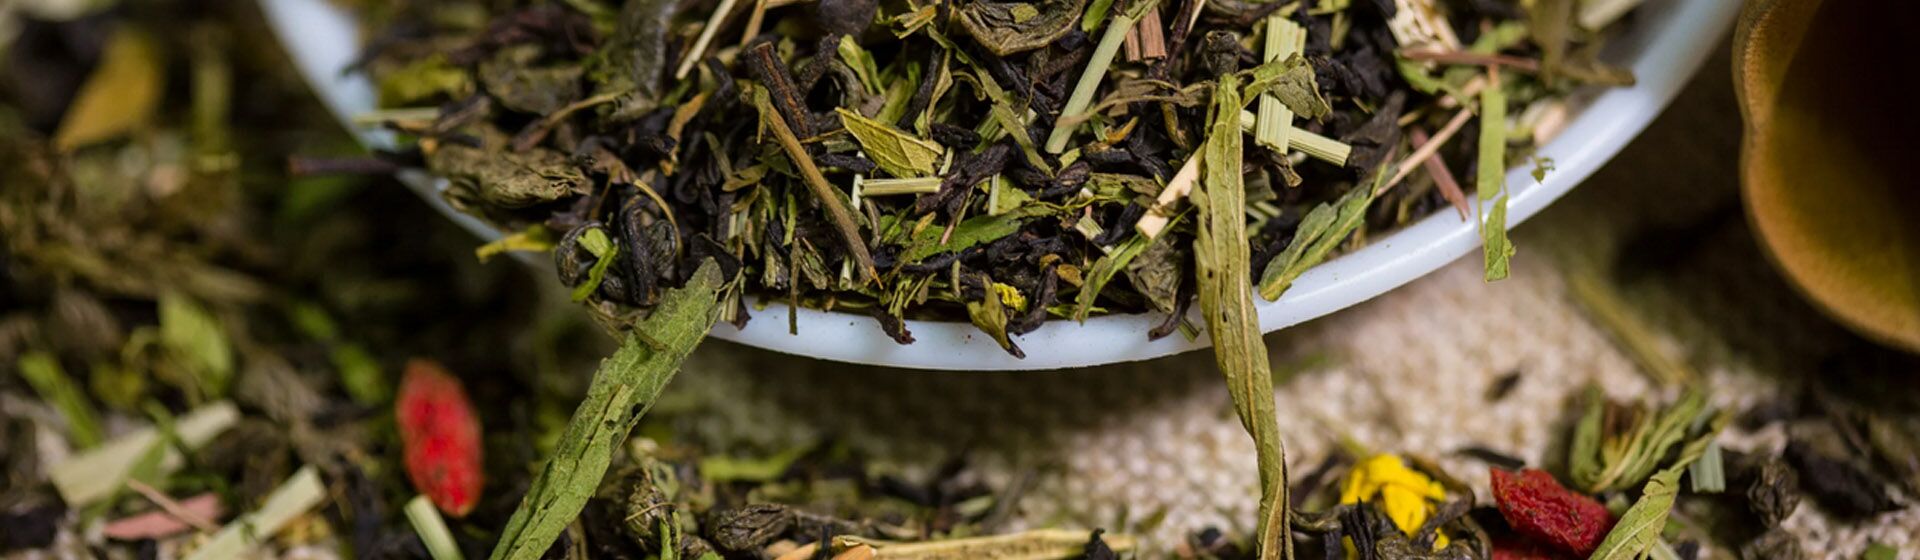 Можно ли смешивать черный и зеленый чай?